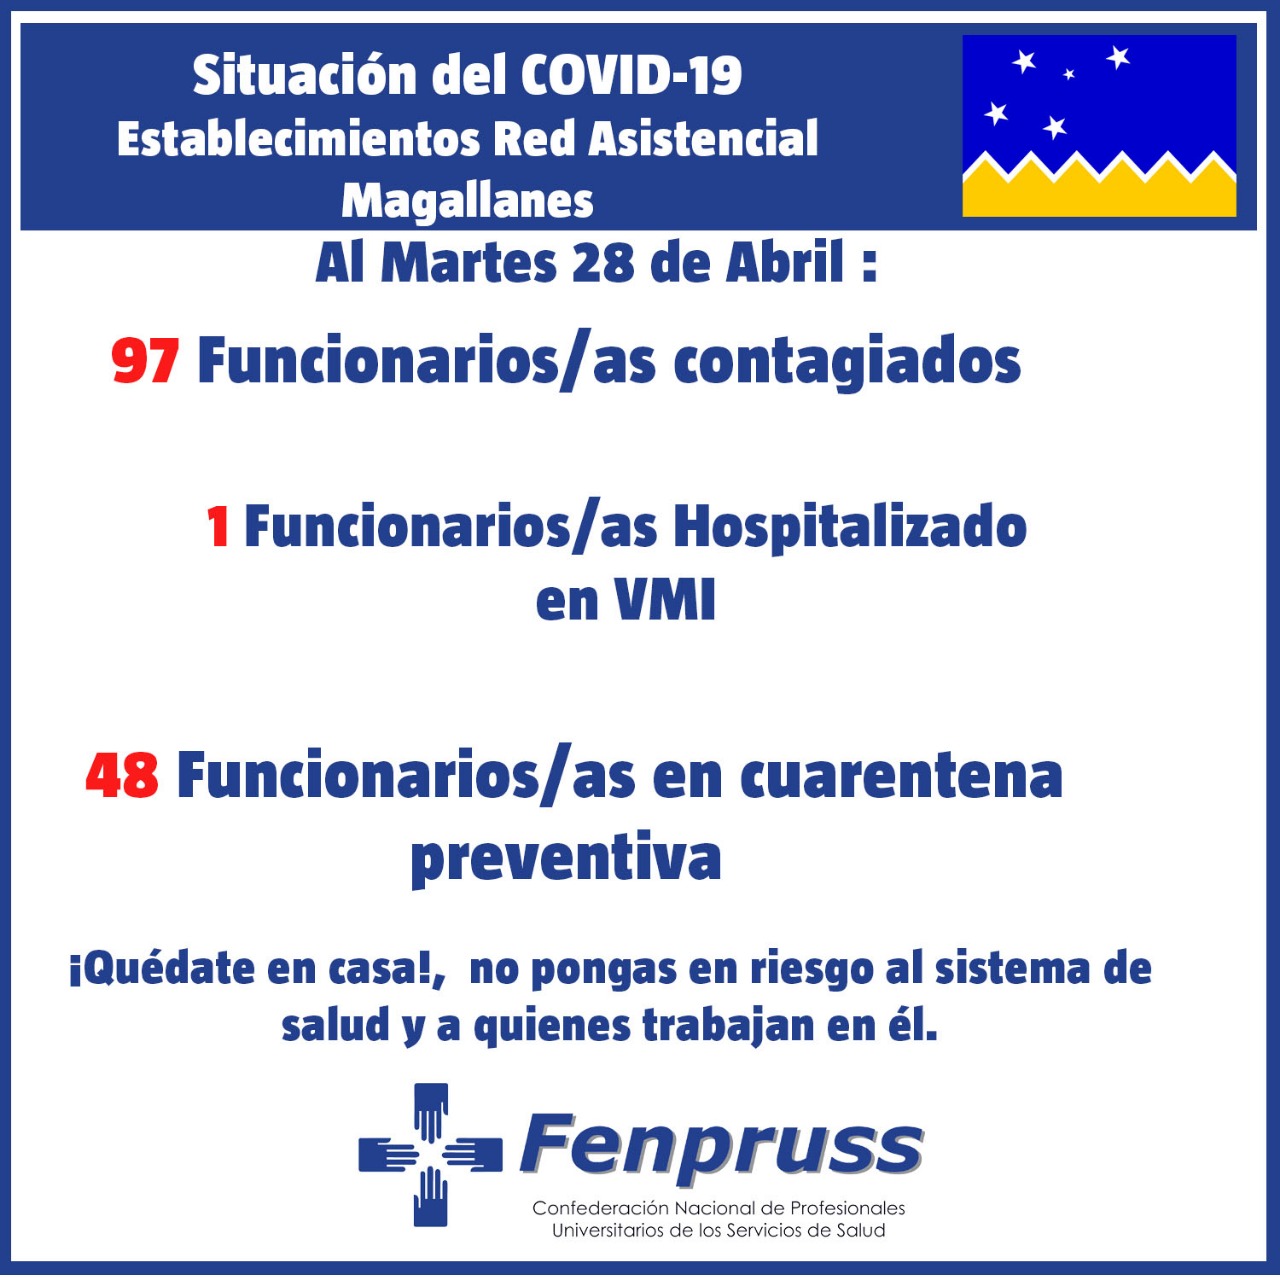 Datos de FENPRUSS: 97 funcionarios/profesionales de Salud contagiados de Covid19 en Magallanes al 28 de abril